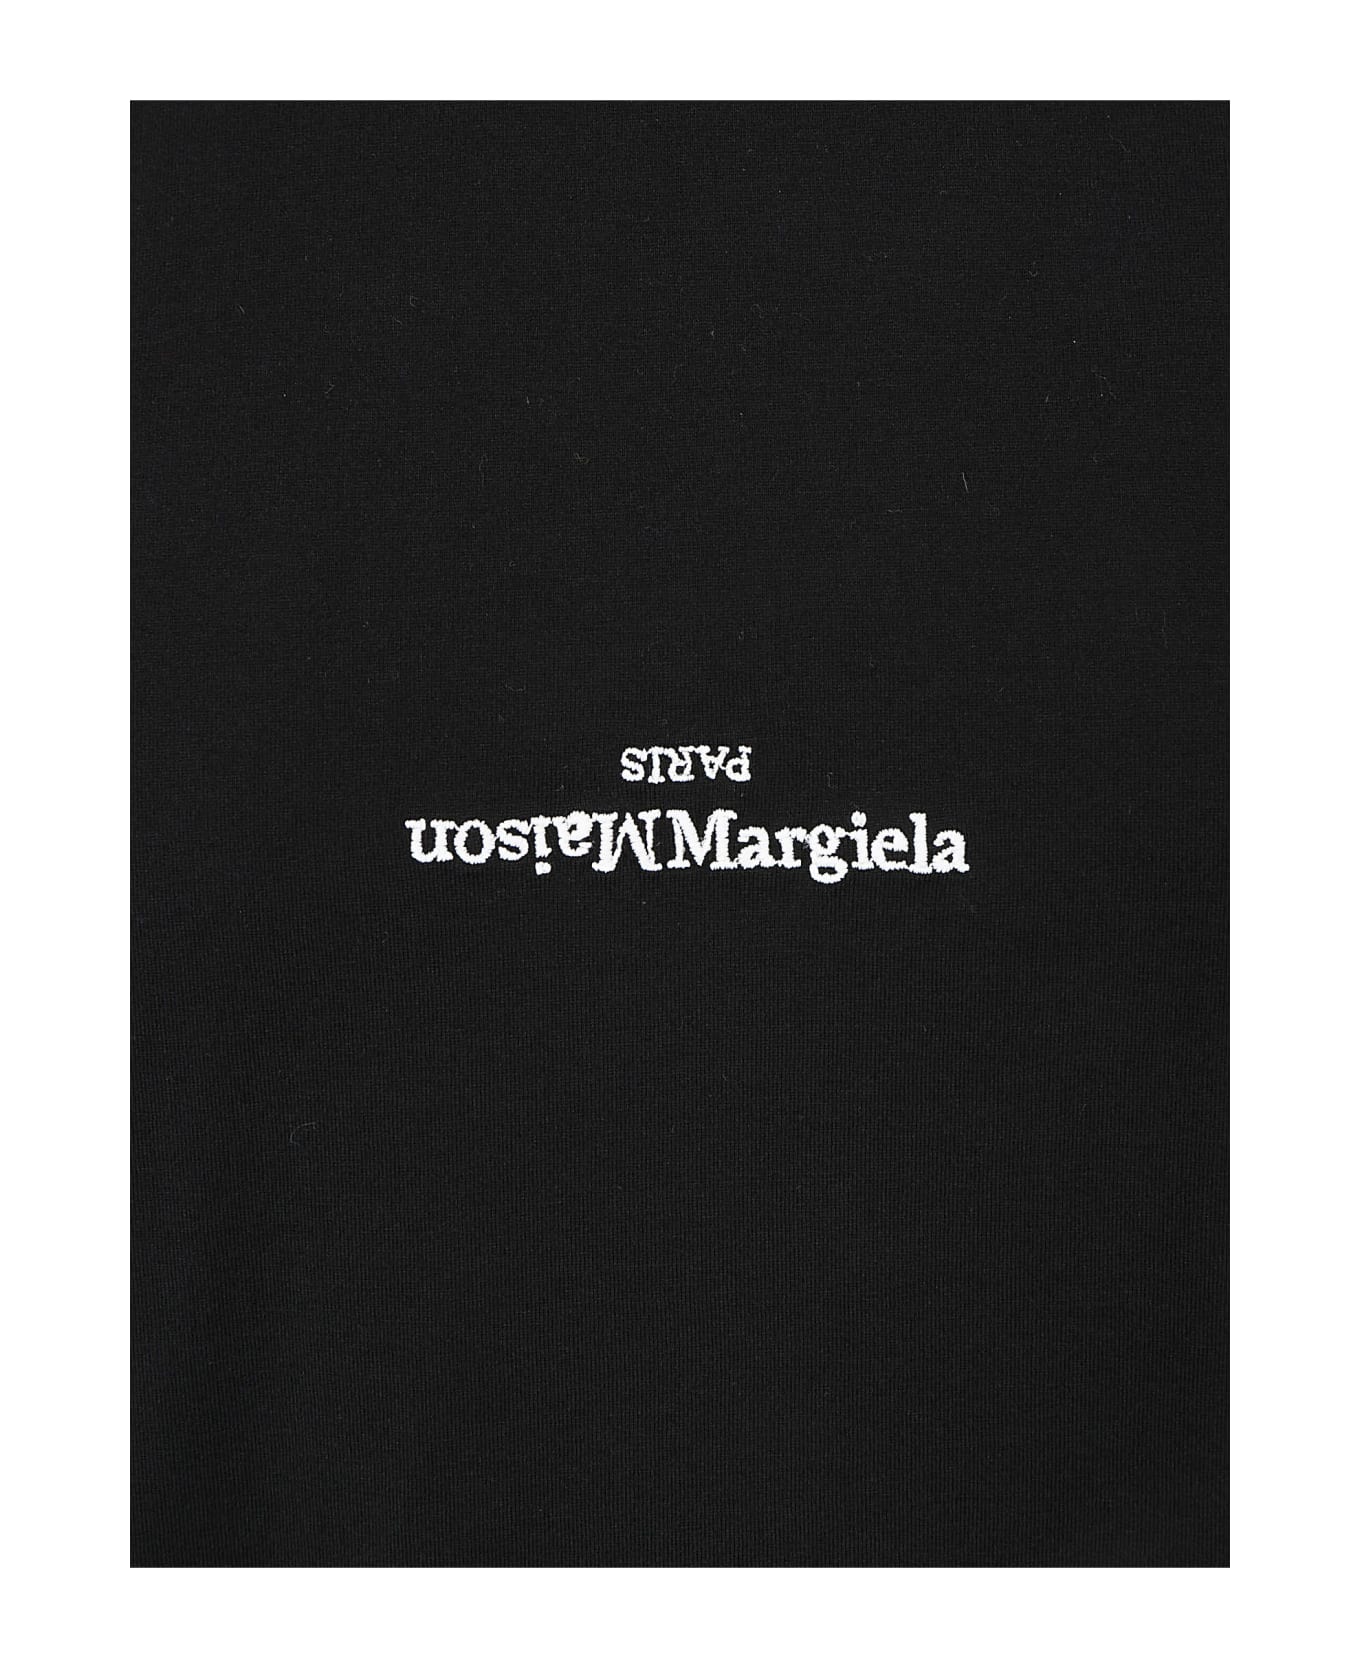 Maison Margiela Logoed T-shirt - Black